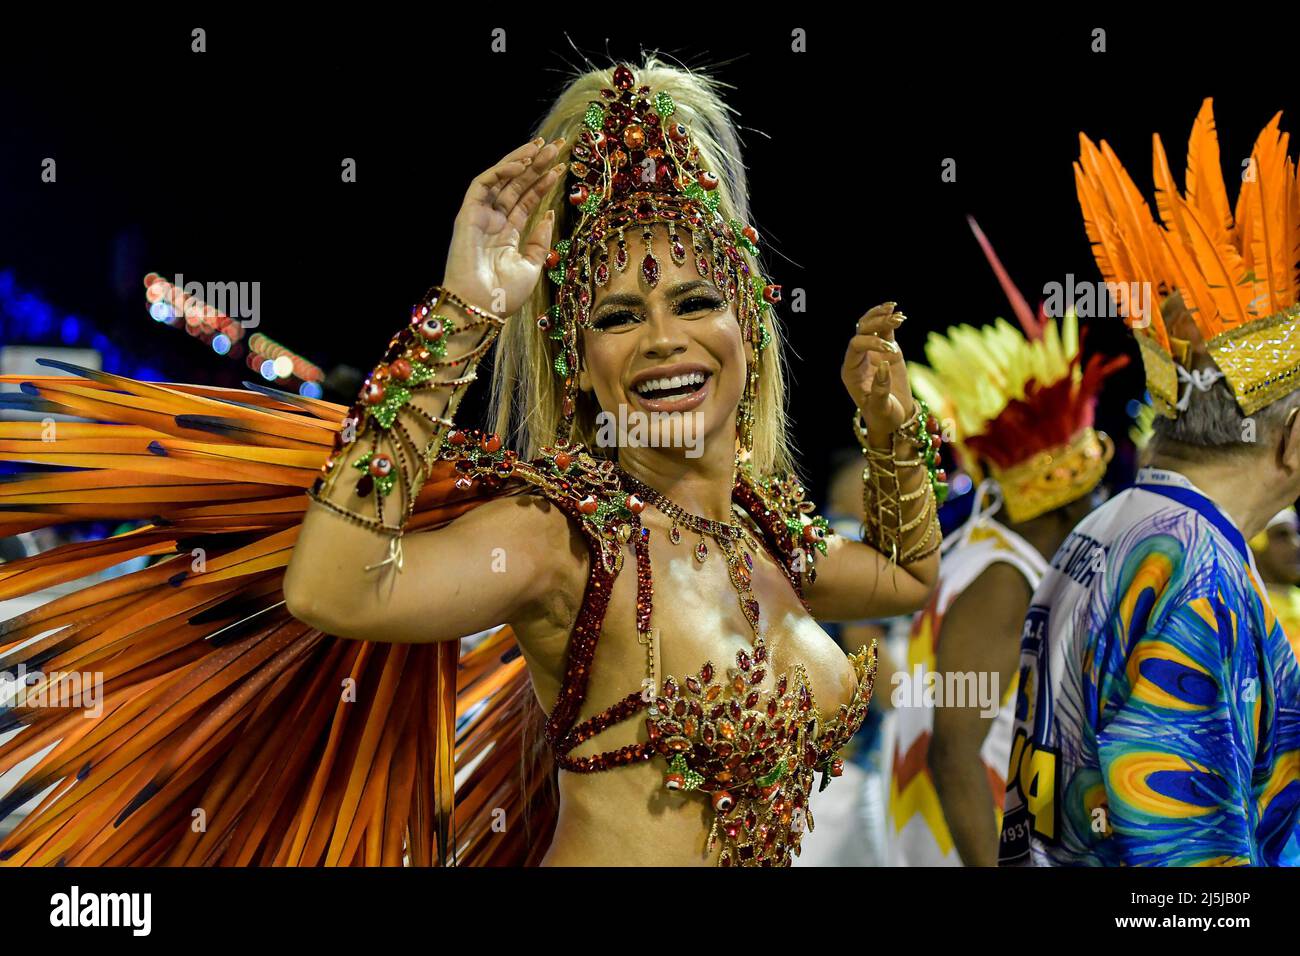 Carnaval de Rio : les défilés reportés à avril pour cause de pandémie